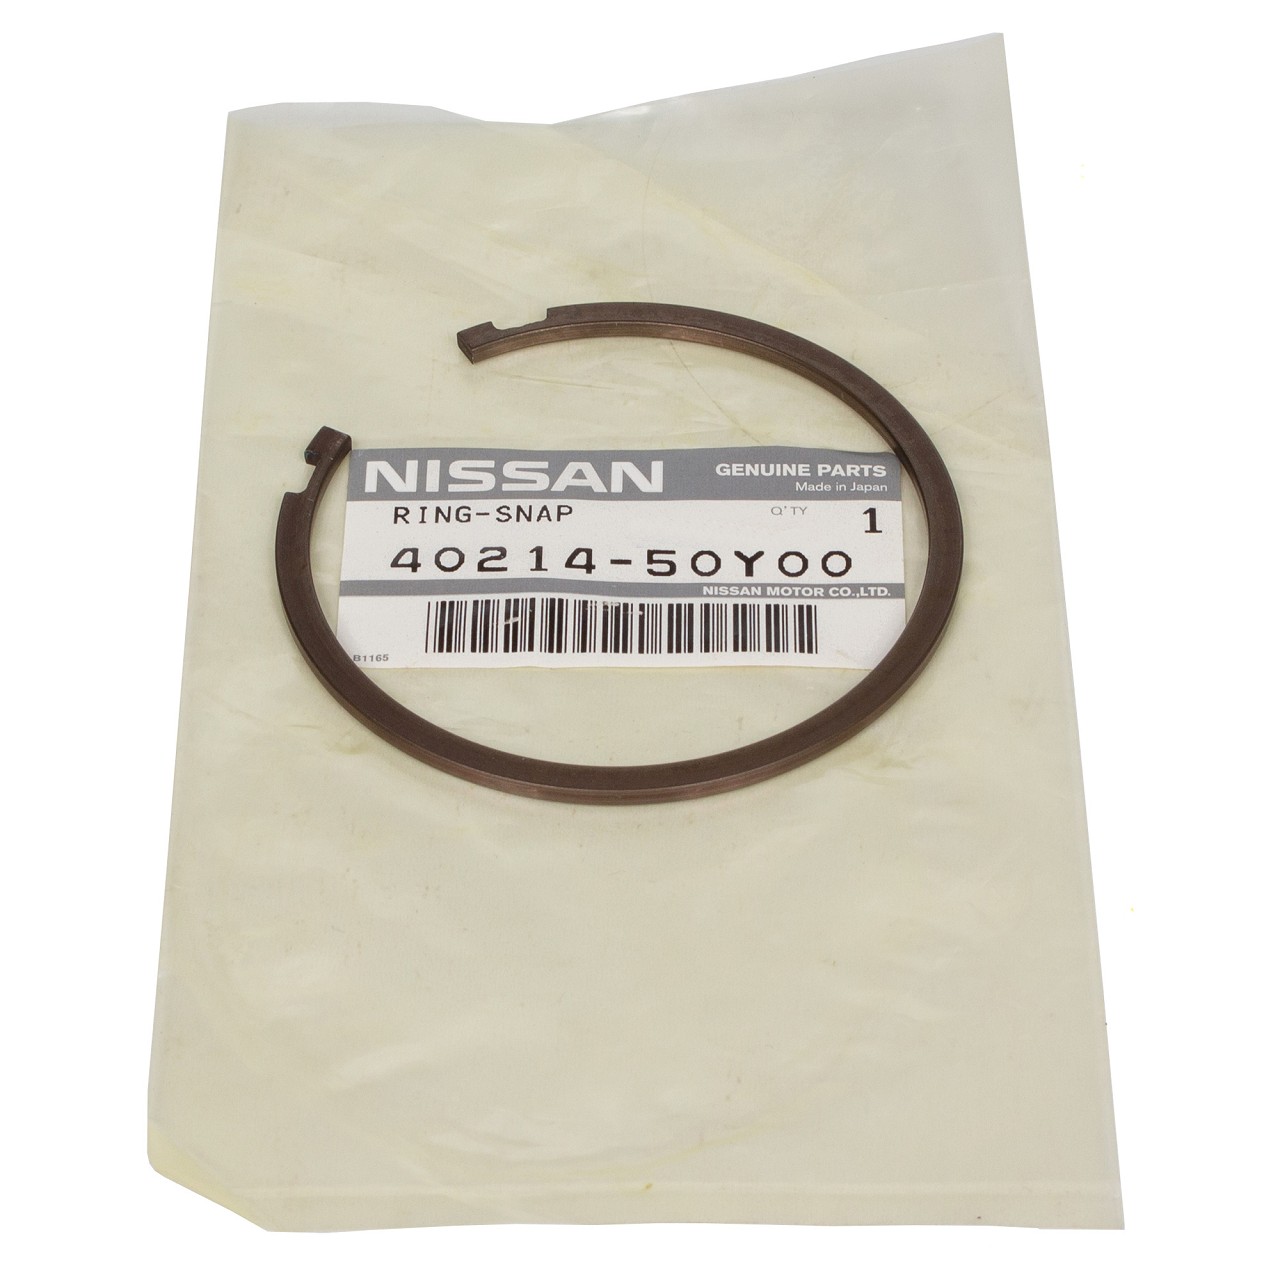 ORIGINAL Nissan Sicherungsring Nutenring Radlager vorne 4021450Y00